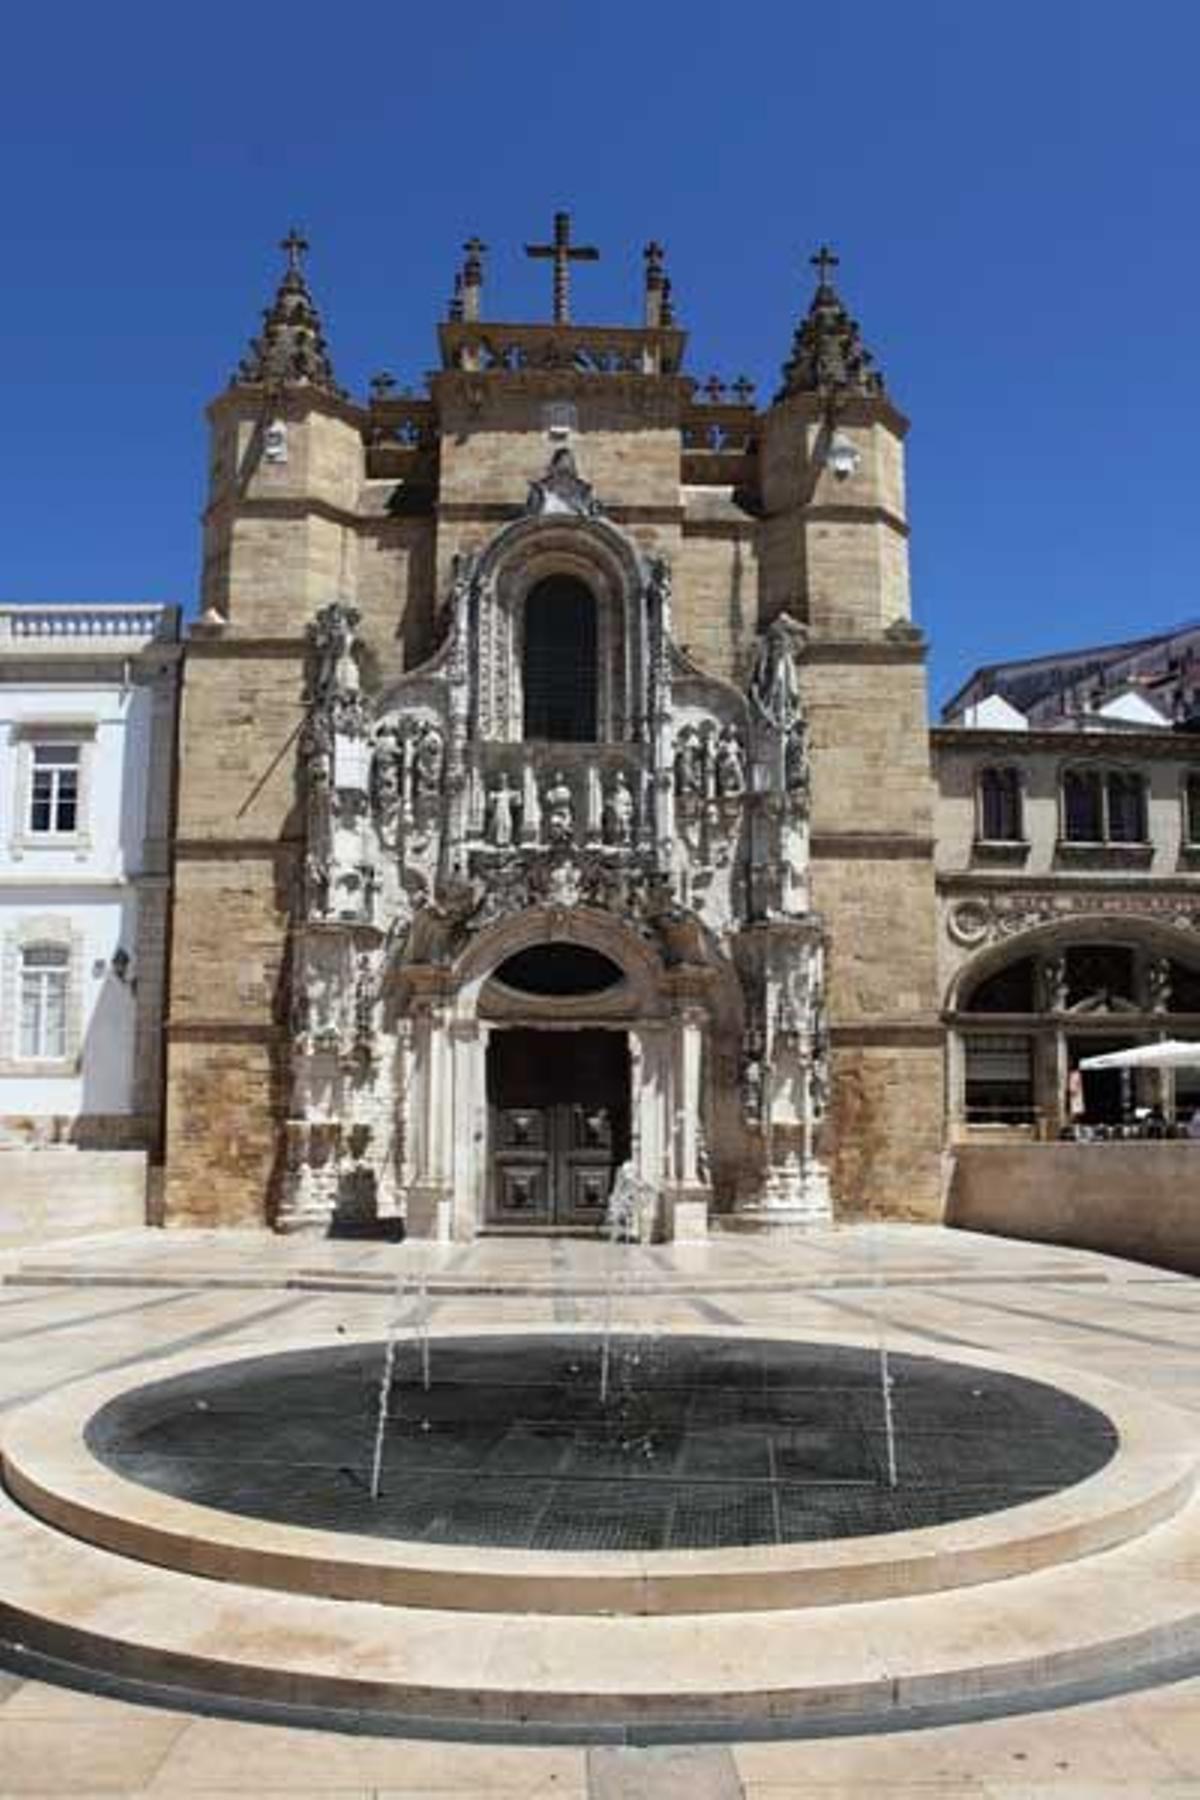 Fachada de la Iglesia de la Santa Cruz en estilo manuelino o gótico tardío.